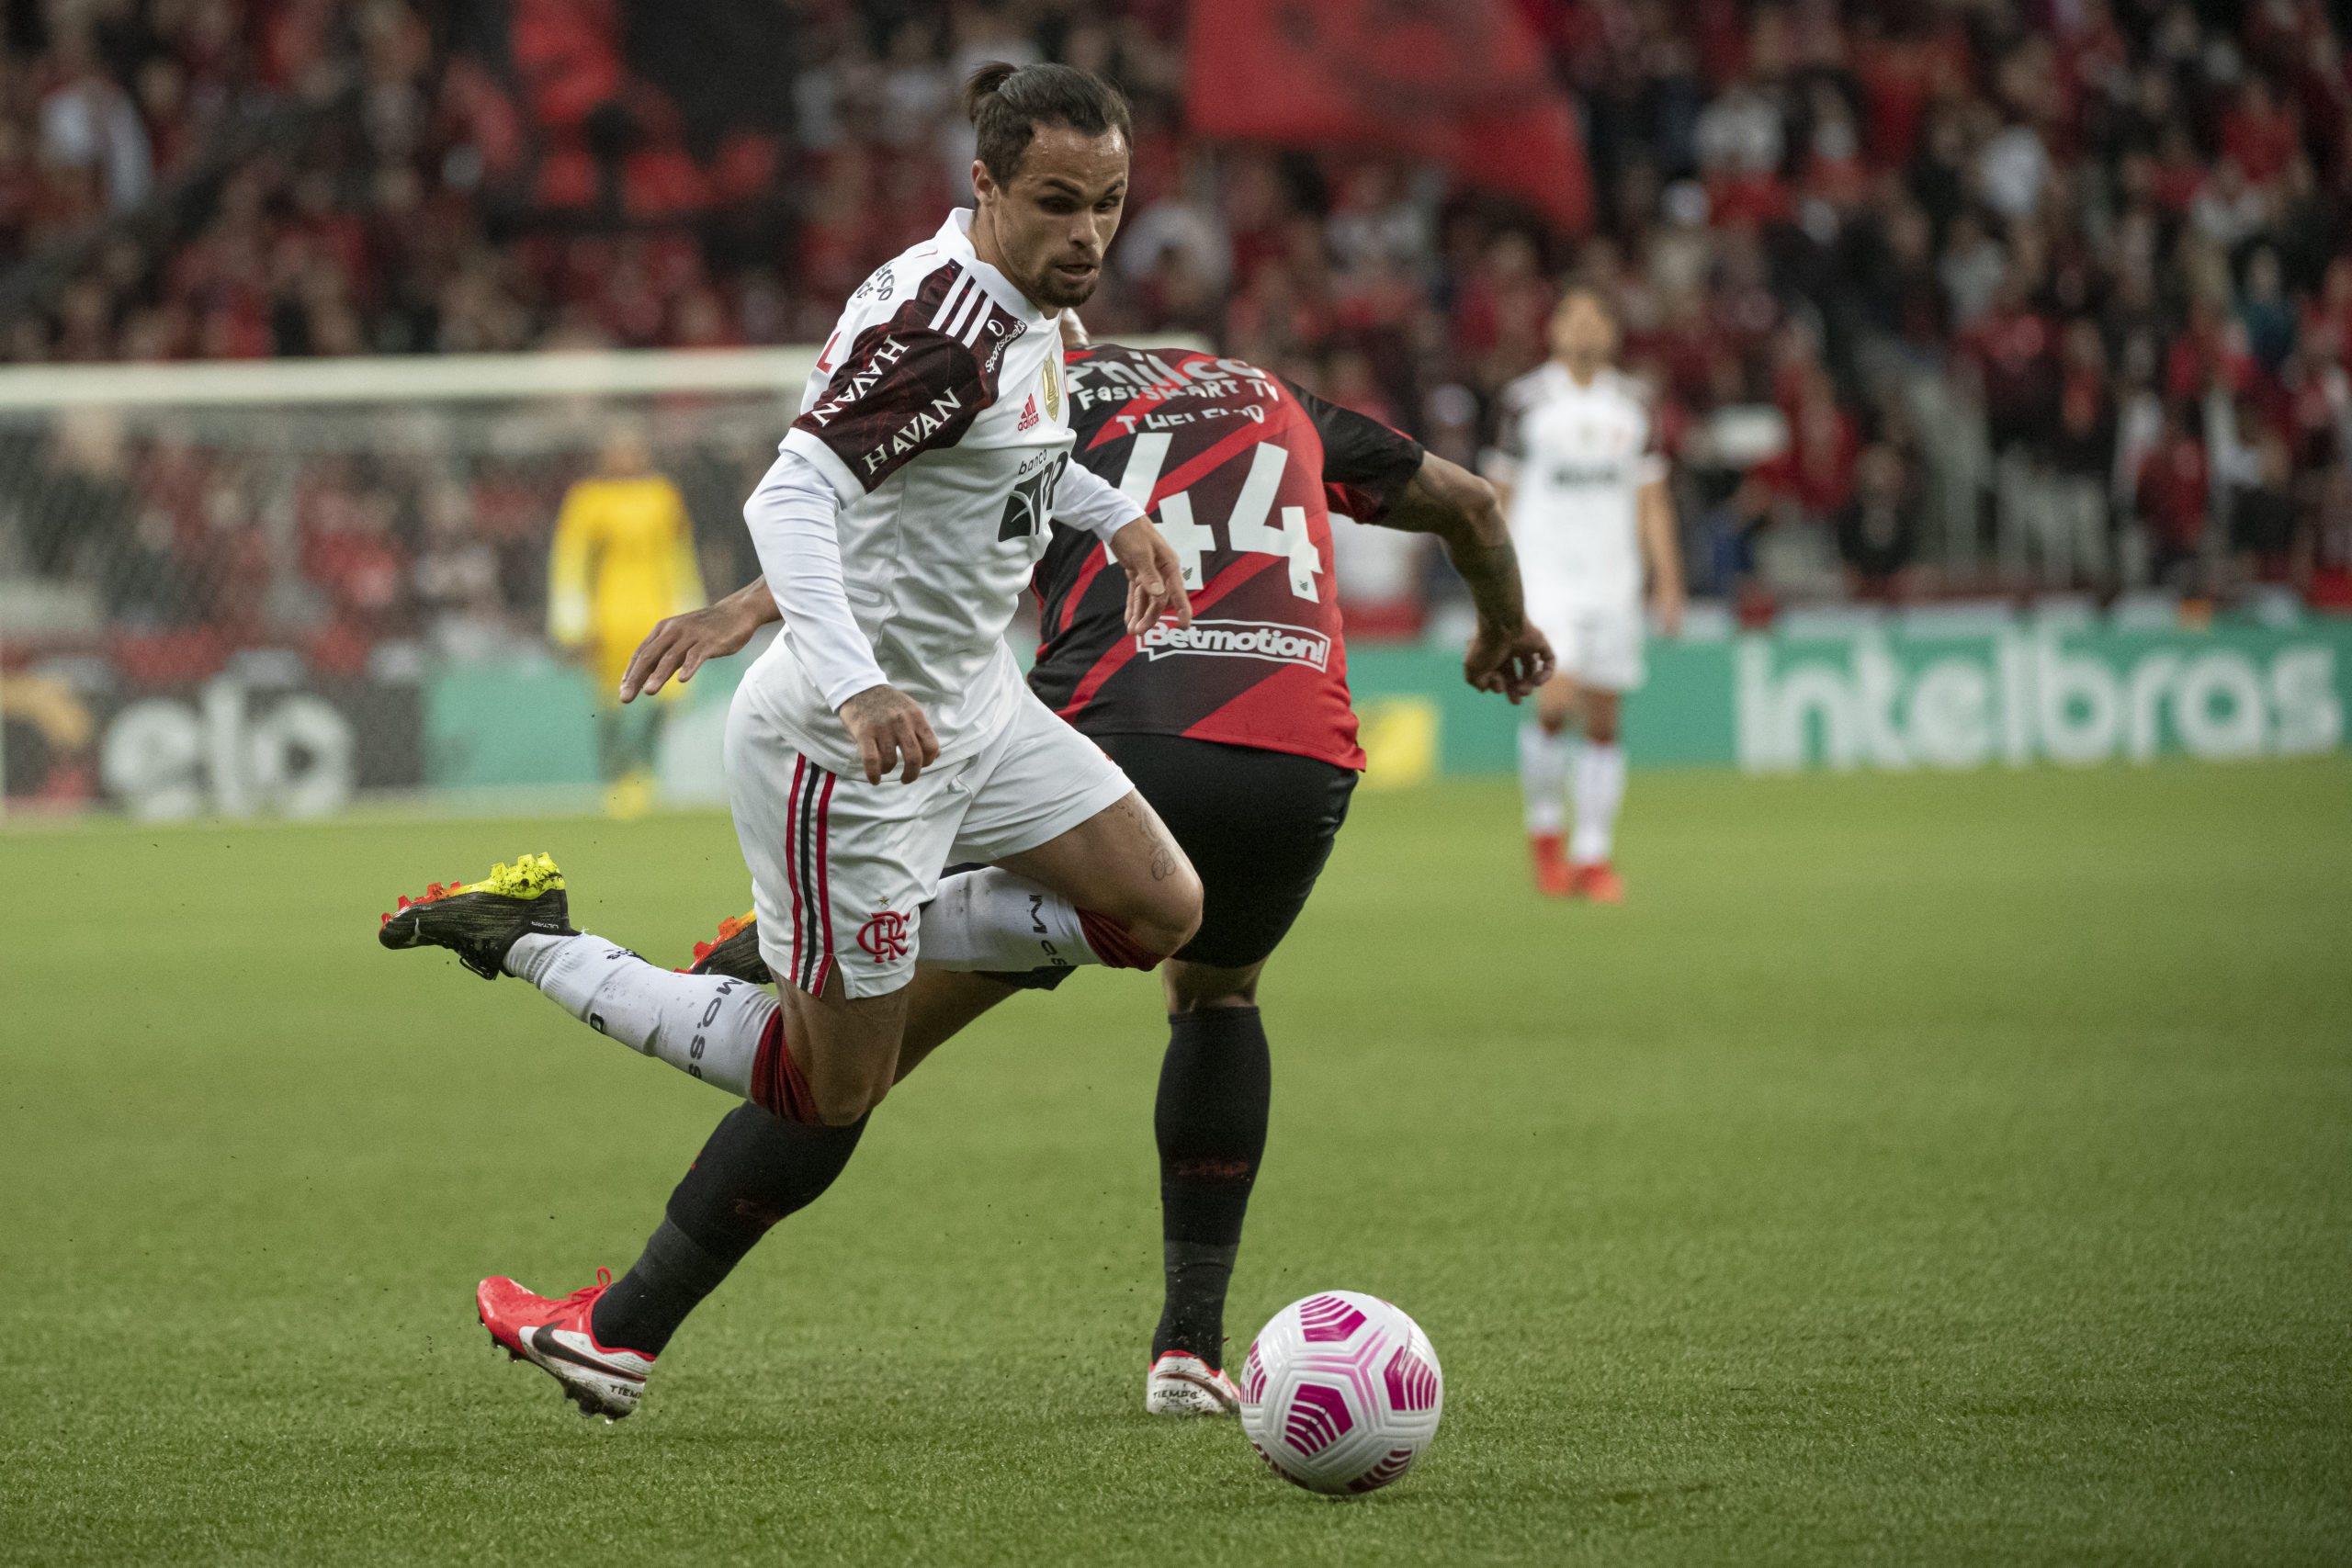 Com sete desfalques, Flamengo divulga lista de relacionados para o duelo contra o Athletico-PR